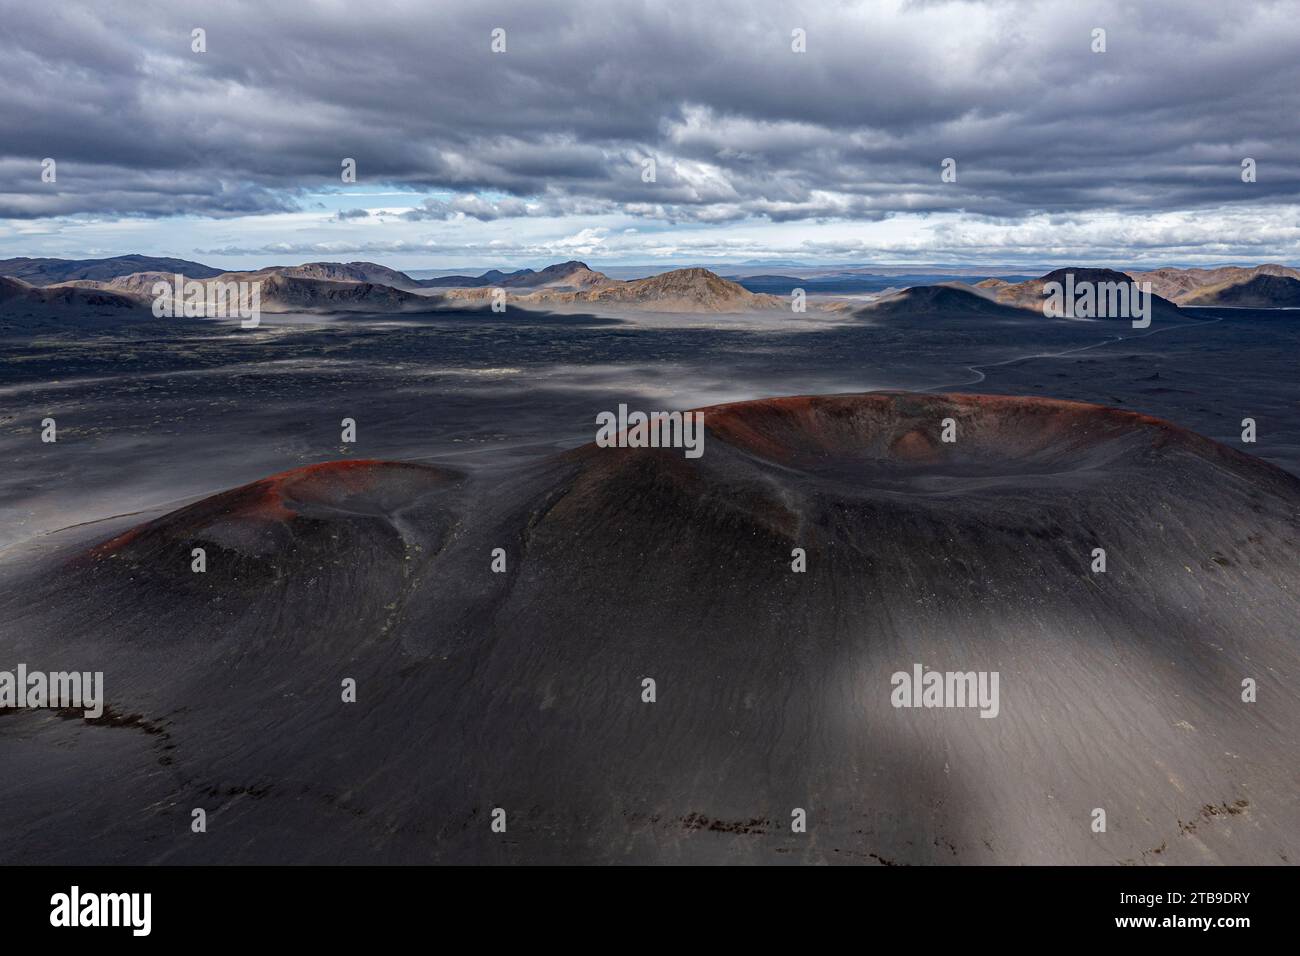 Urzeitliche Vulkanlandschaft in der Nähe von Landmannalaugar, Islande Banque D'Images